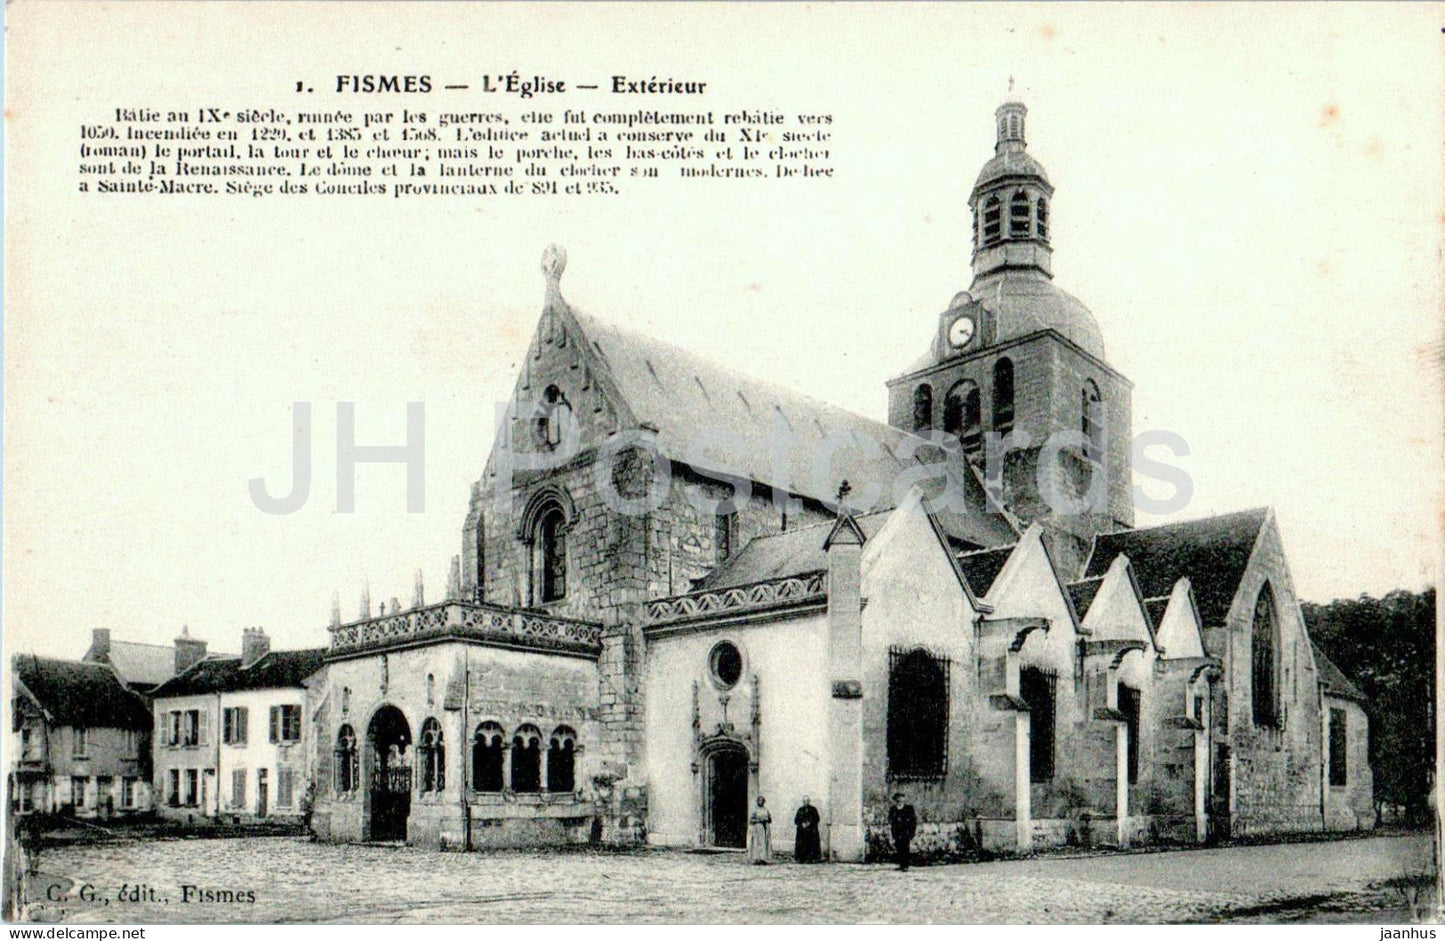 Fismes - L'Eglise - Exterieur - 1 - old postcard - France - unused - JH Postcards